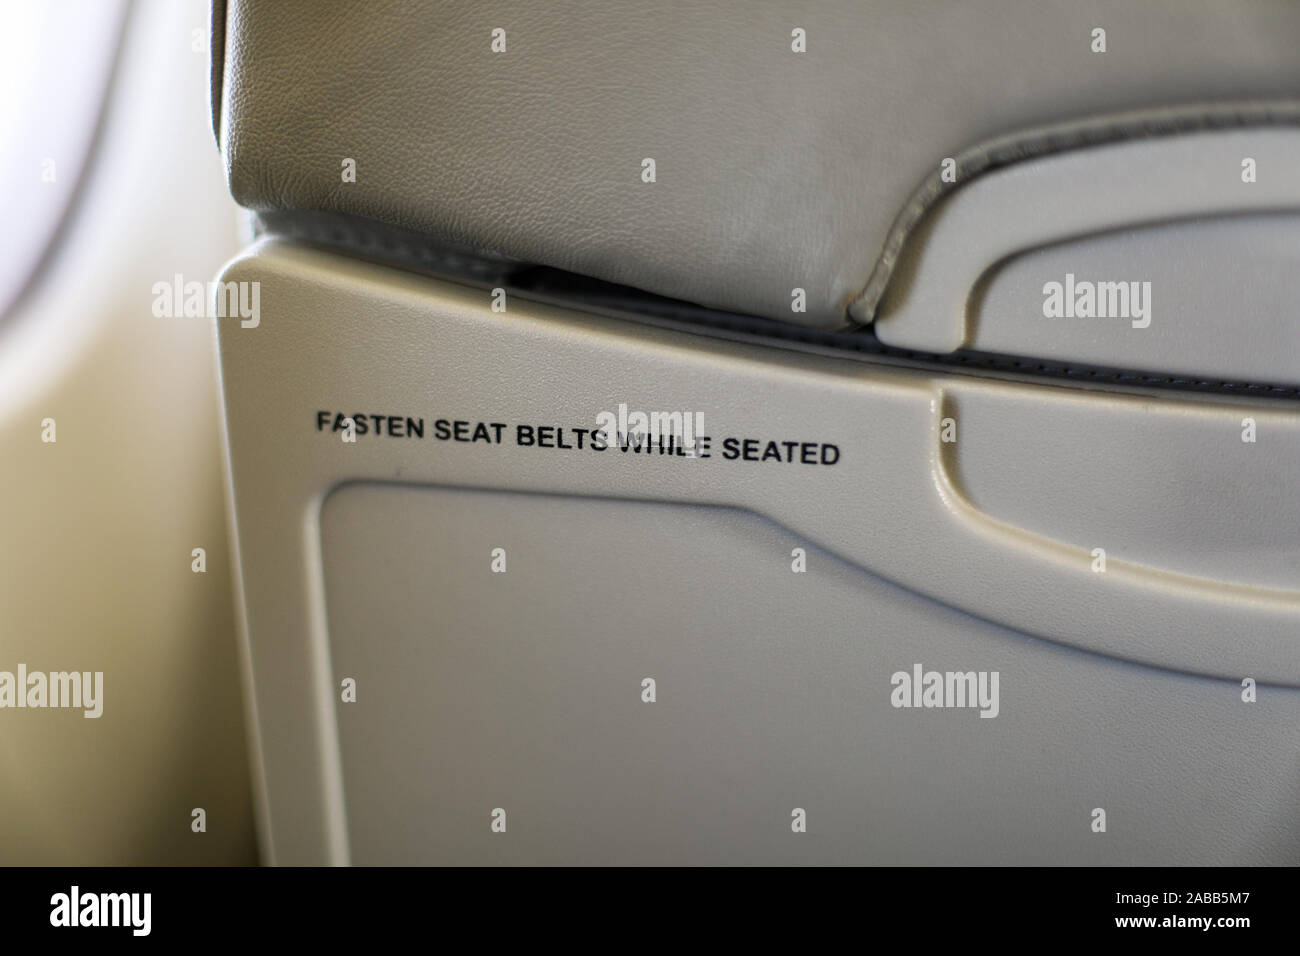 Attacher la ceinture de sécurité en position assise -texte sur l'arrière du siège passager d'un avion Banque D'Images